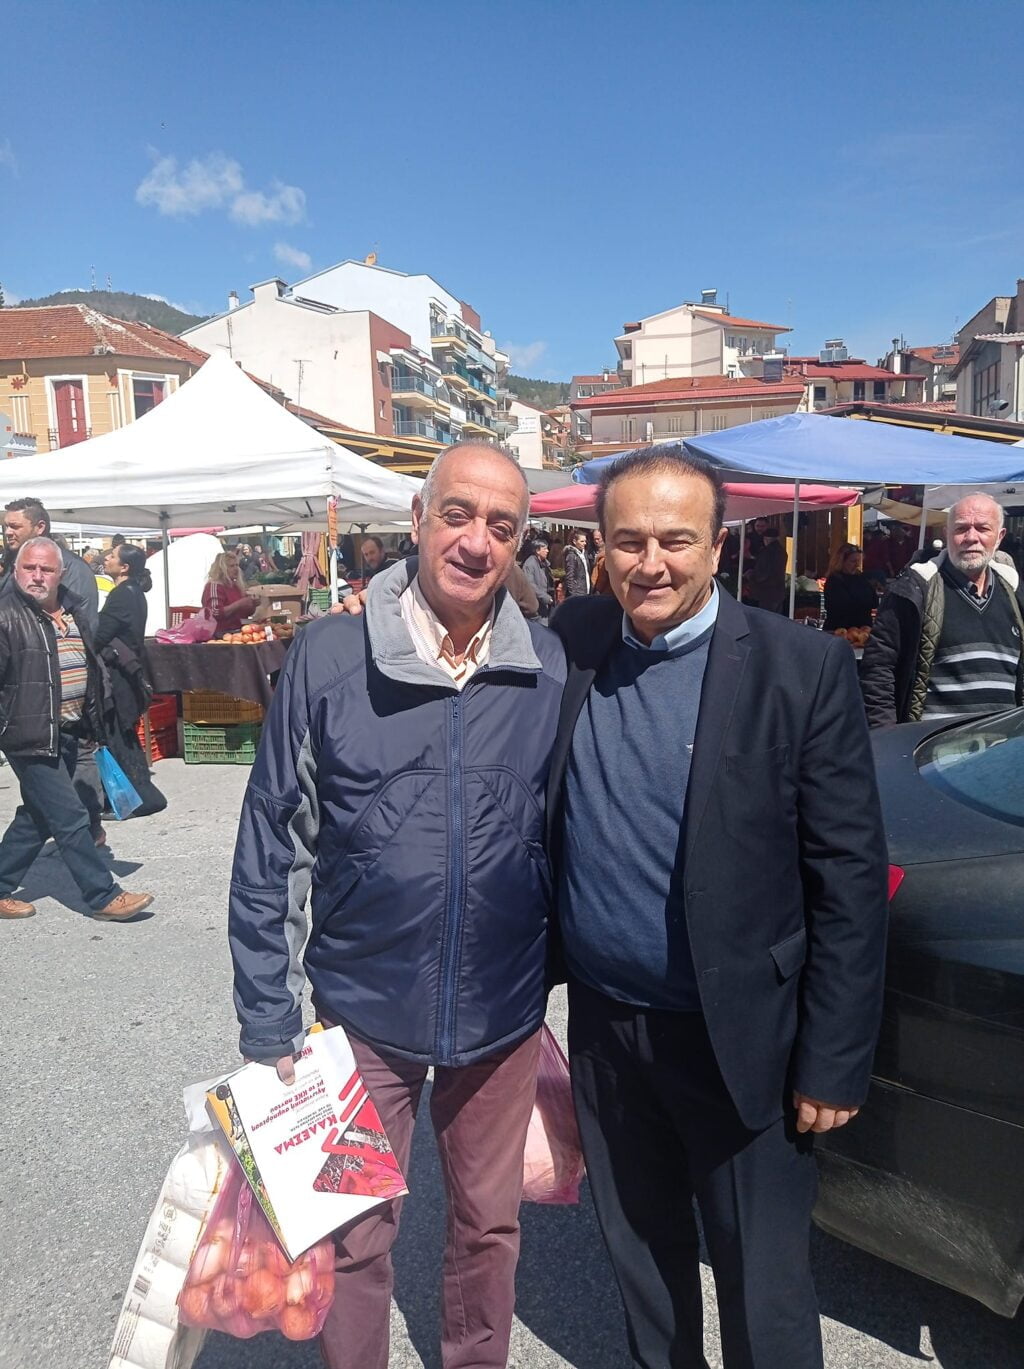 Επίσκεψη στην λαϊκή αγορά της Φλώρινας και συζήτηση με τους παραγωγούς και τους καταναλωτές